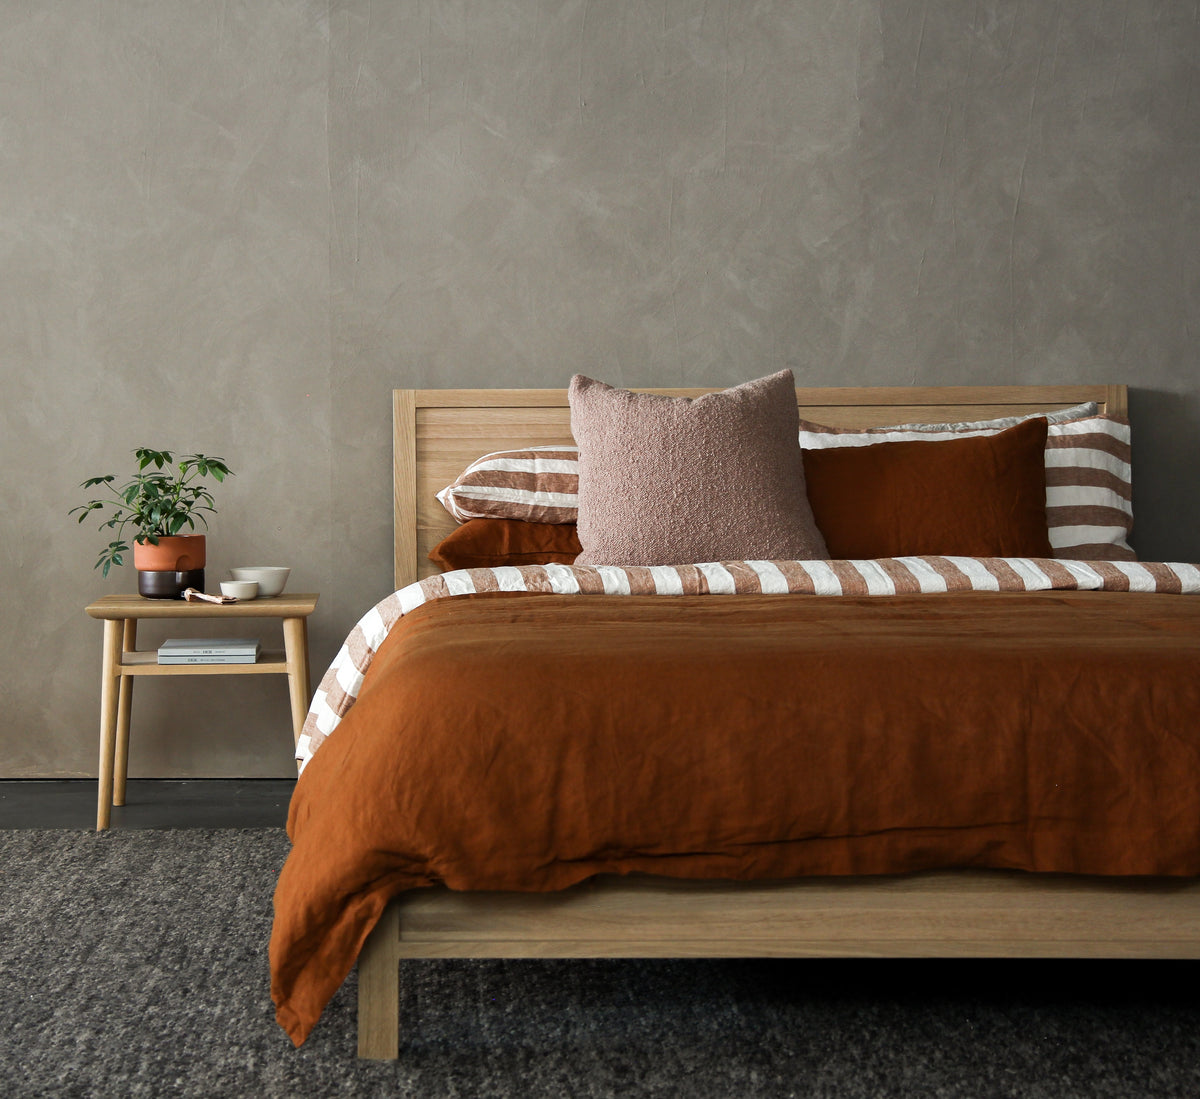 Ein Bett steht vor einer grauen Wand. Die Bettdecke ist kufperfarbig. Es hat mehrere Kissen. Das Bett ist aus Holz. Der Nachttisch ist auch aus Holz. Auf dem Nachttisch steht eine Pflanze, eine Schefflera.